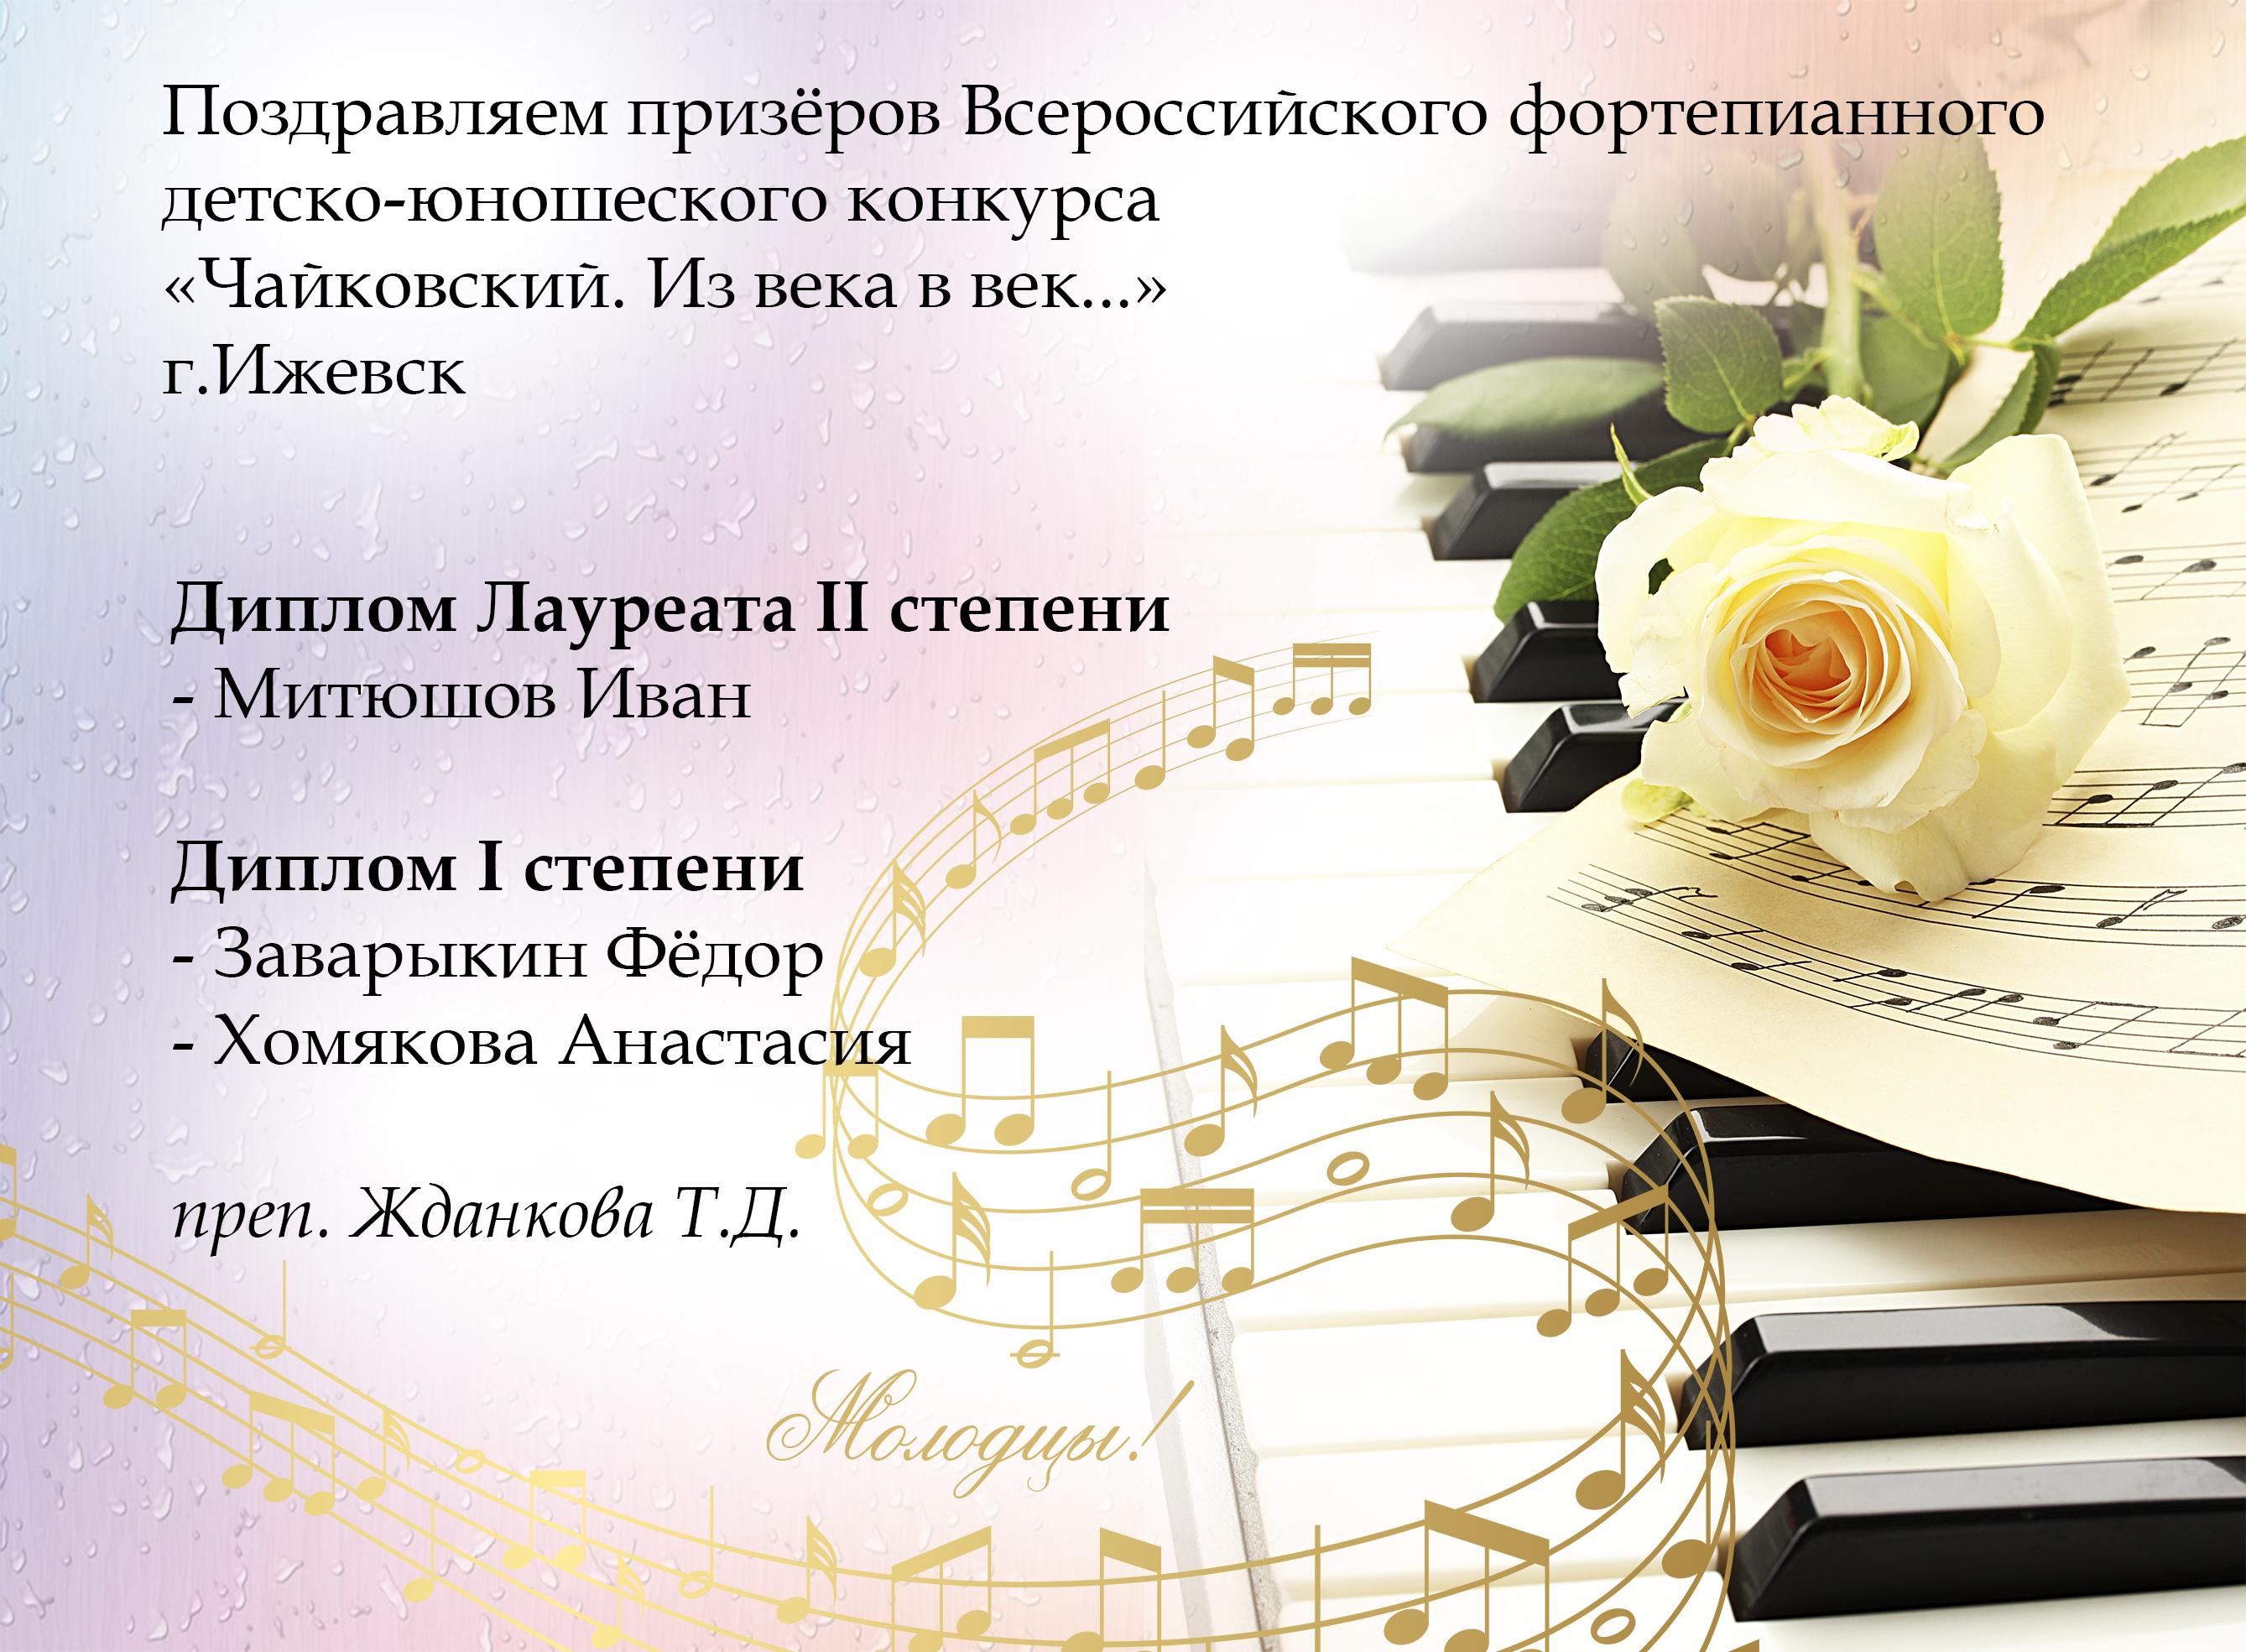 Поздравления с победой в конкурсе фортепиано